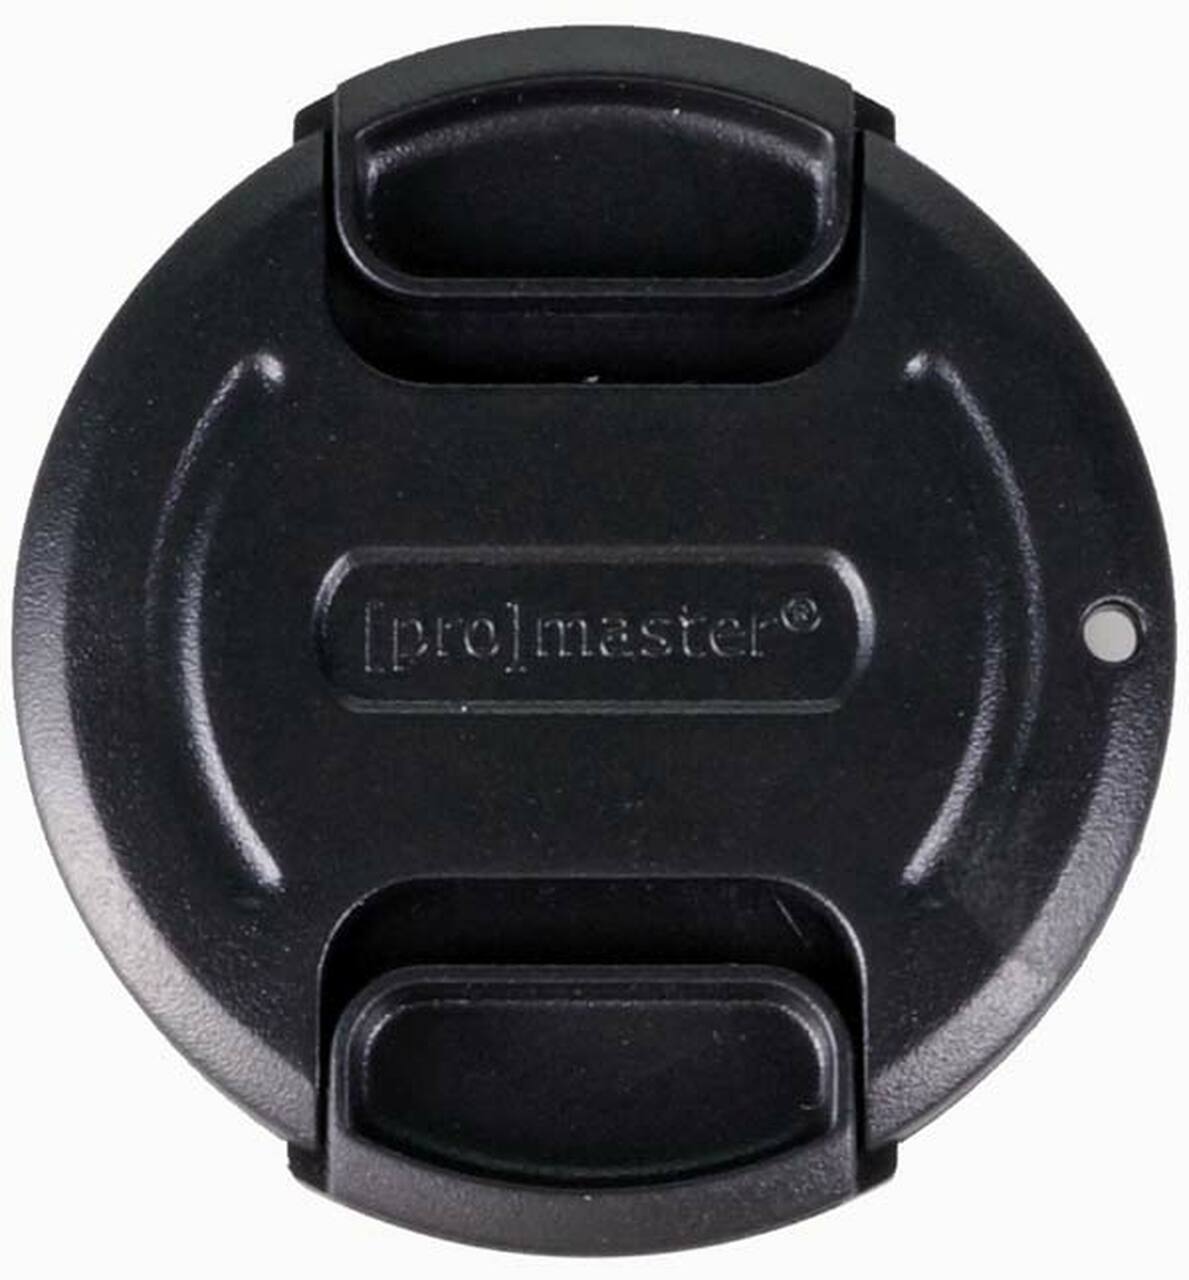 Promaster 1401 43mm Lens Cap